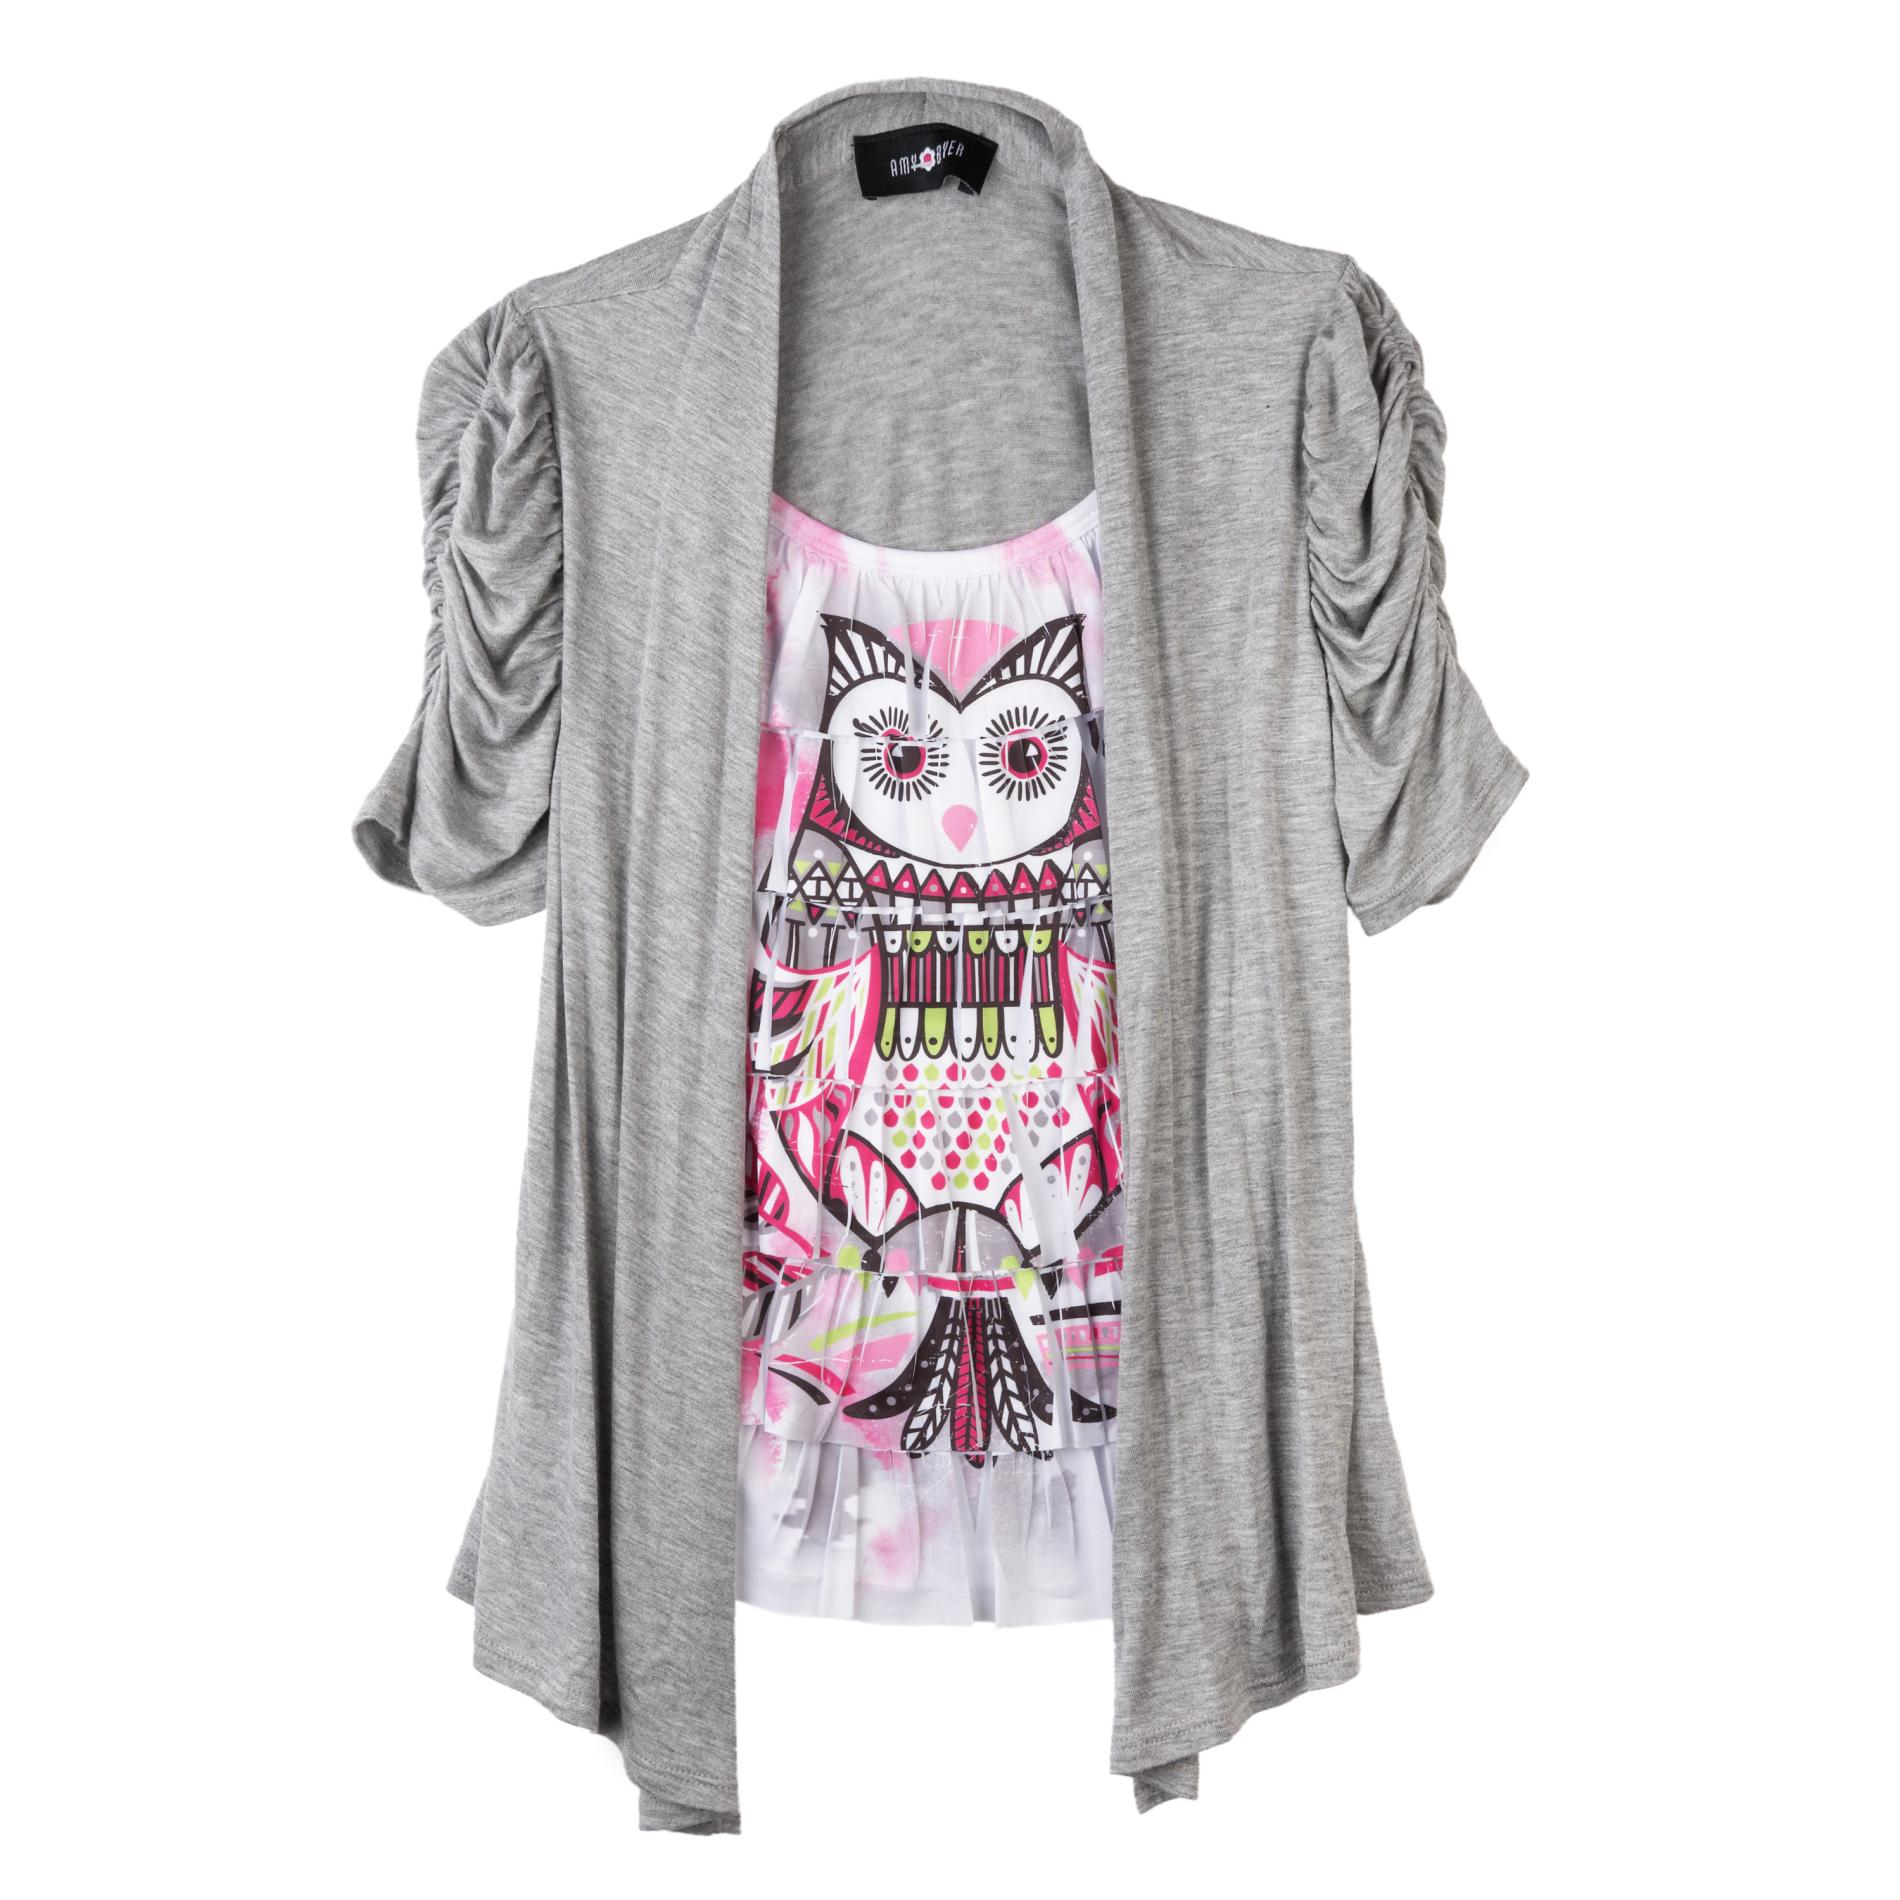 Amy's Closet Girl's Layered Look Top - Owl